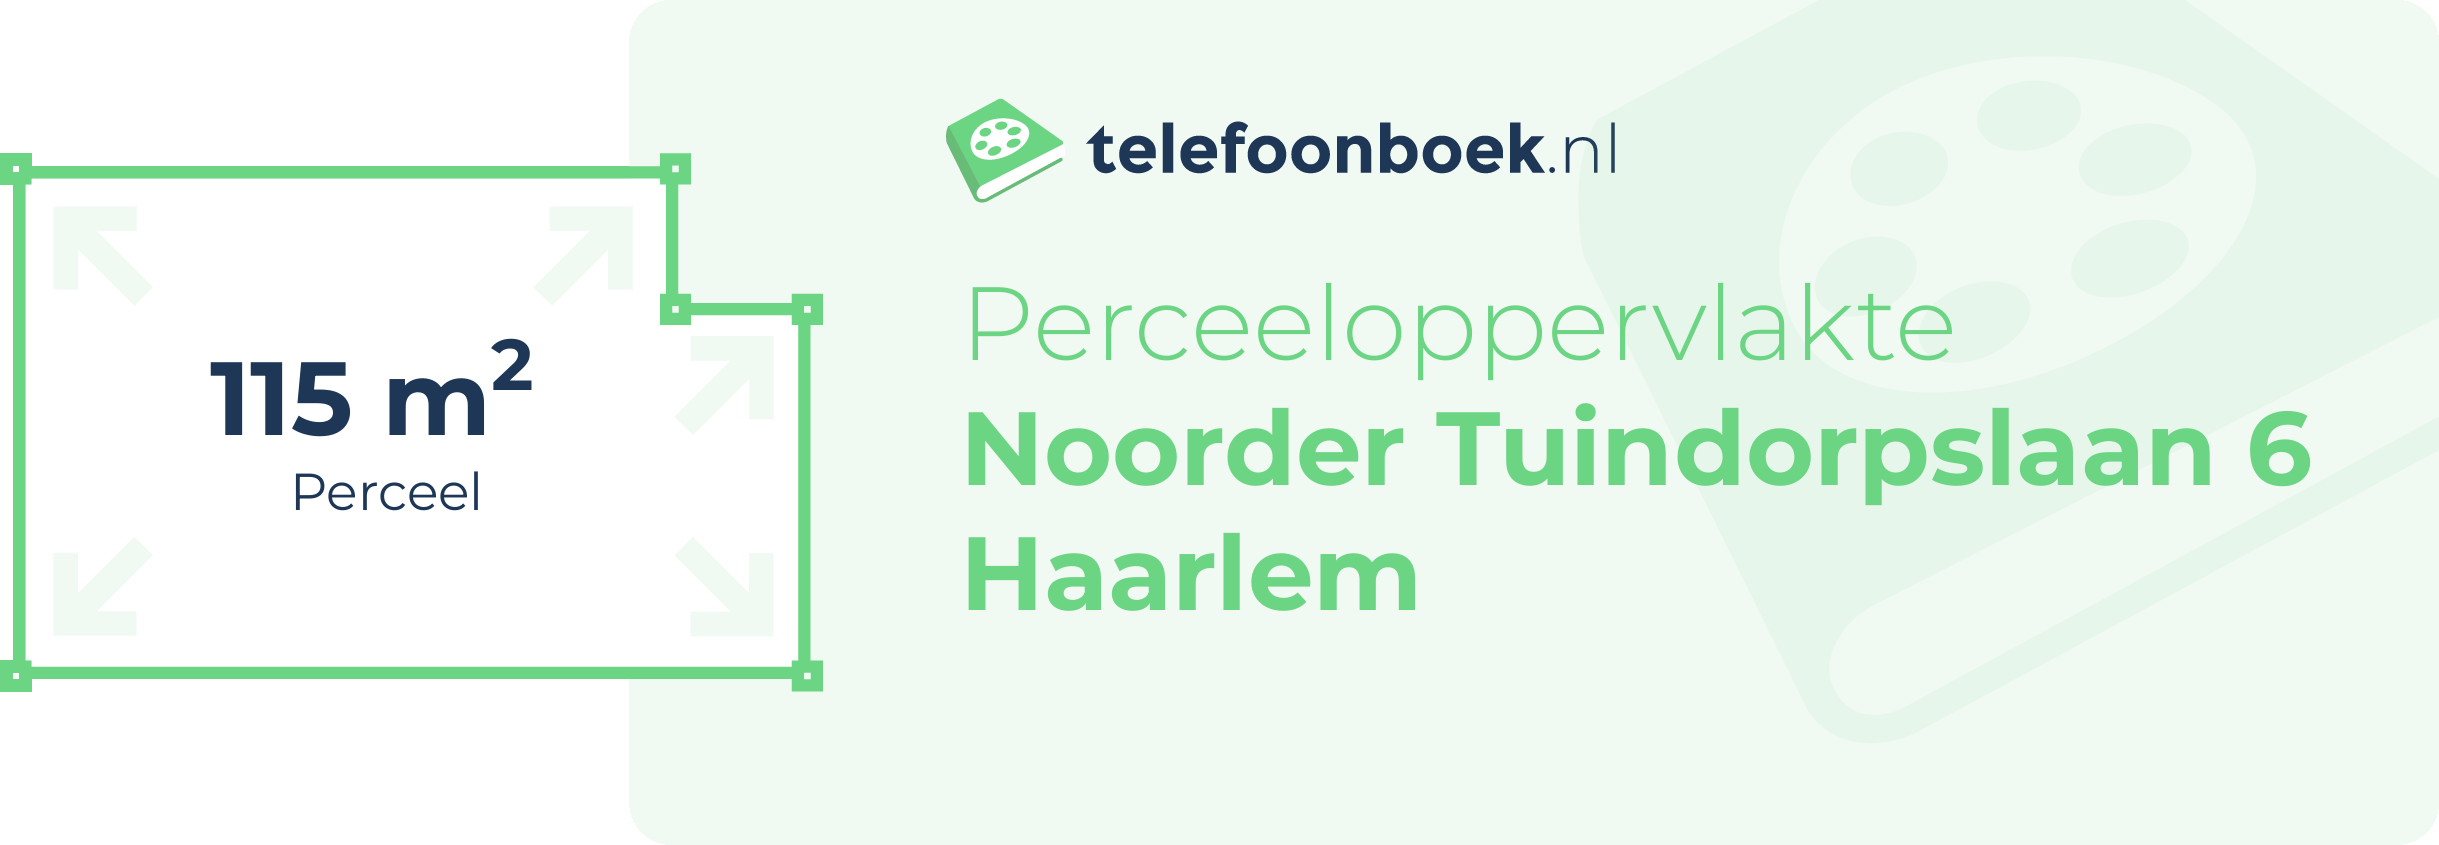 Perceeloppervlakte Noorder Tuindorpslaan 6 Haarlem